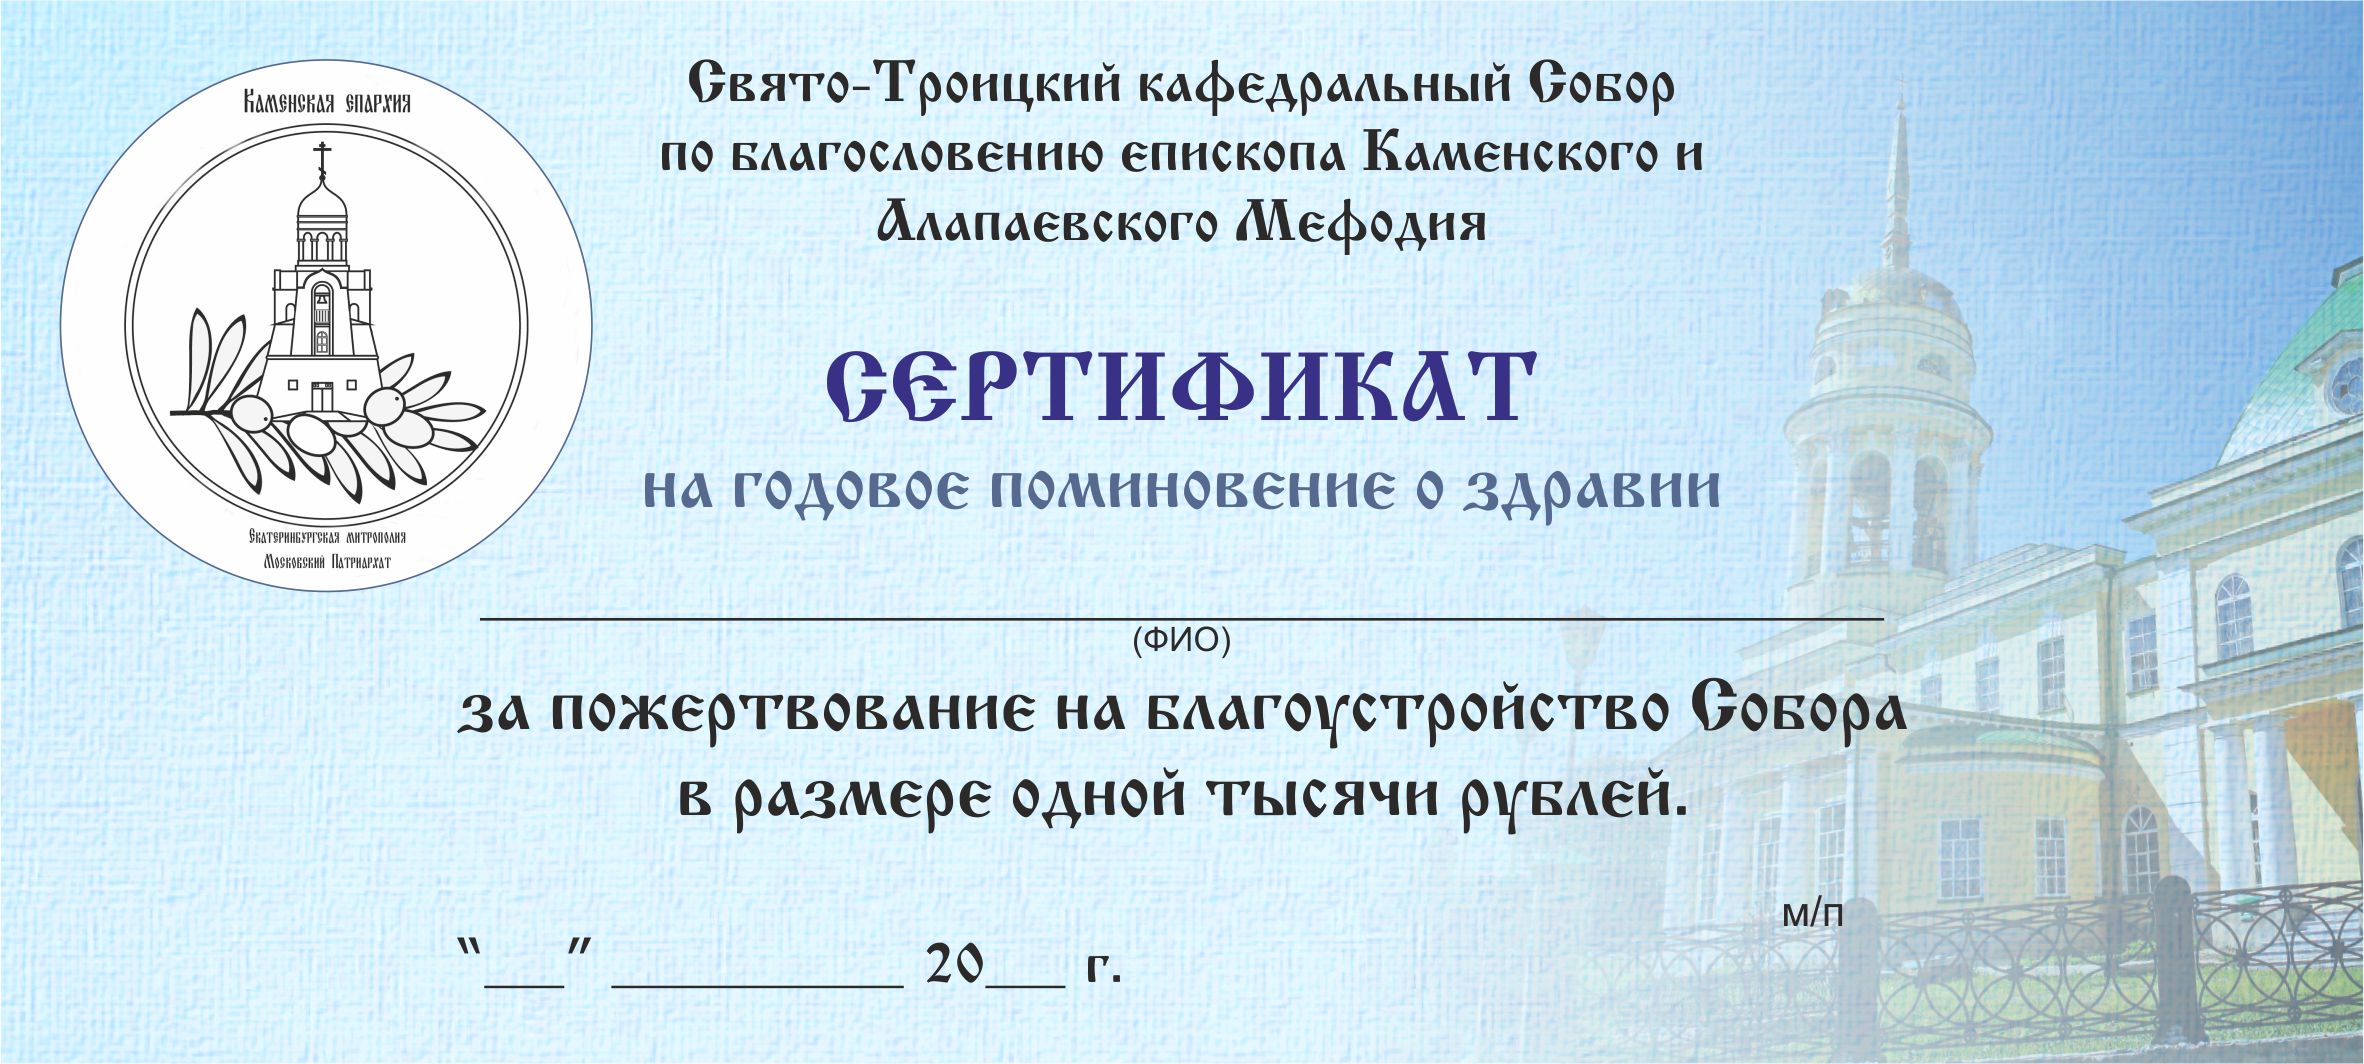 сертификат о здравии утв